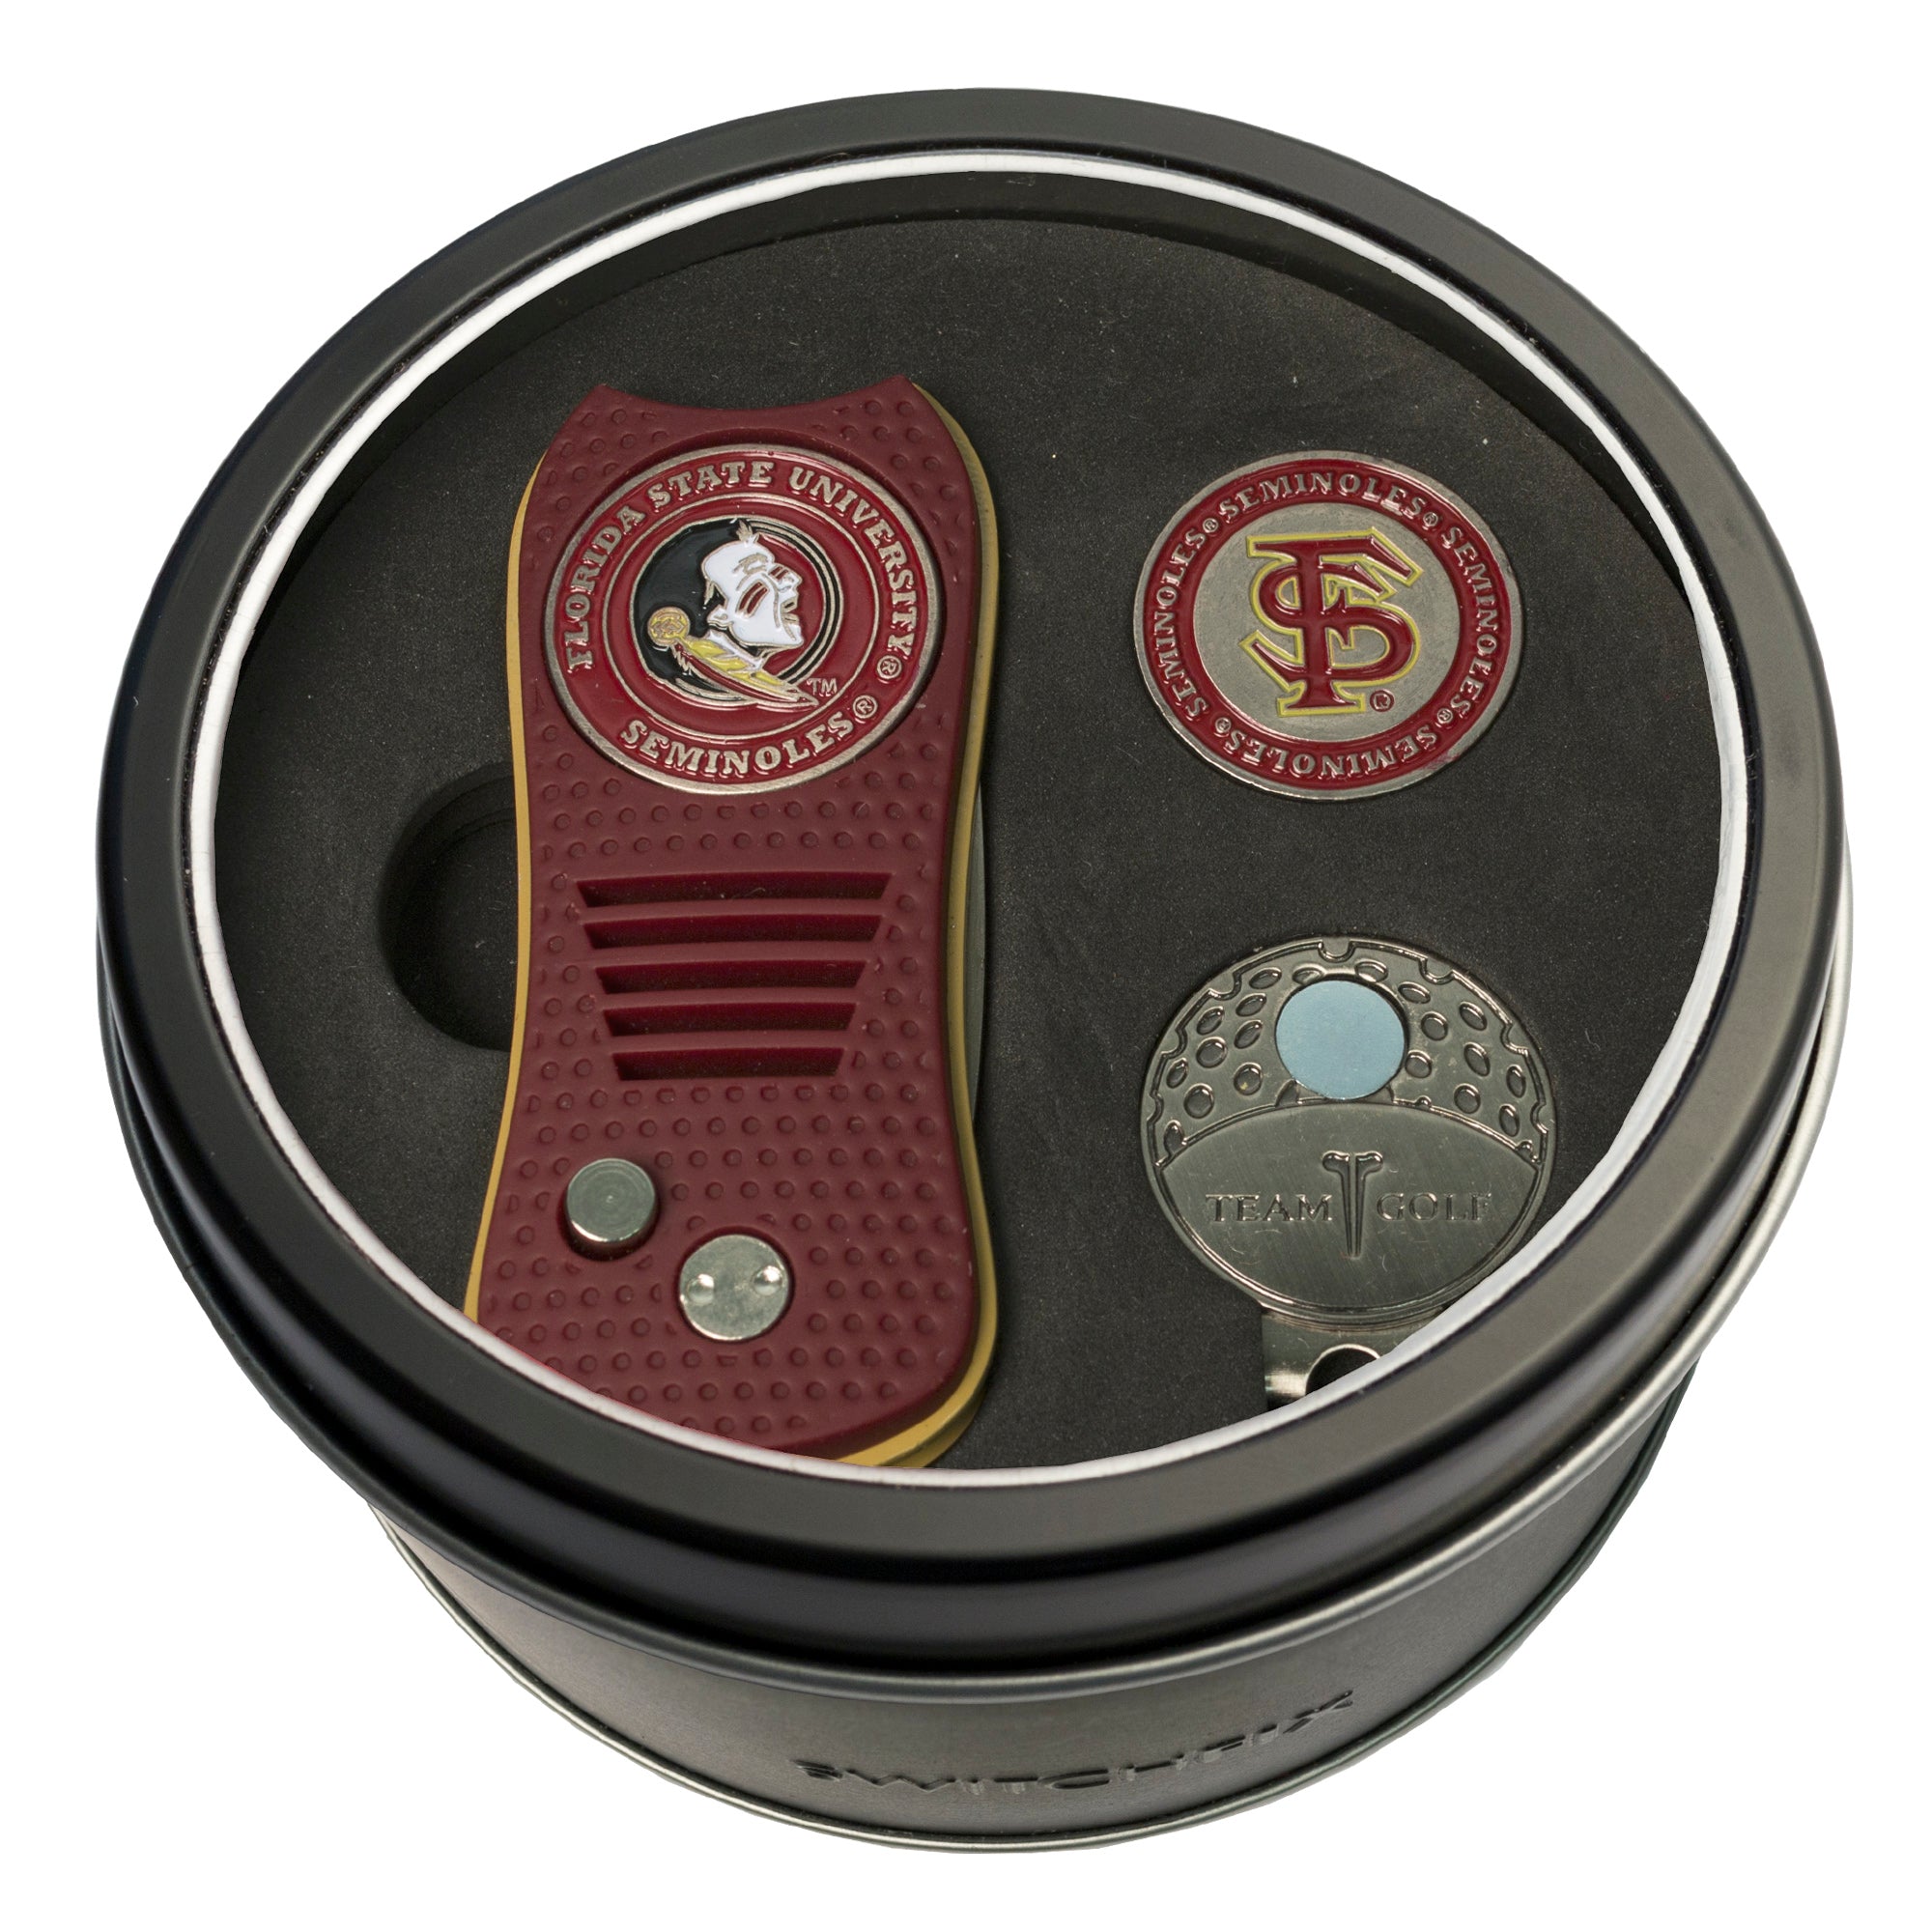 Florida State Seminoles Switchblade Divot Tool + Cap Clip + Ball Marker Tin Gift Set